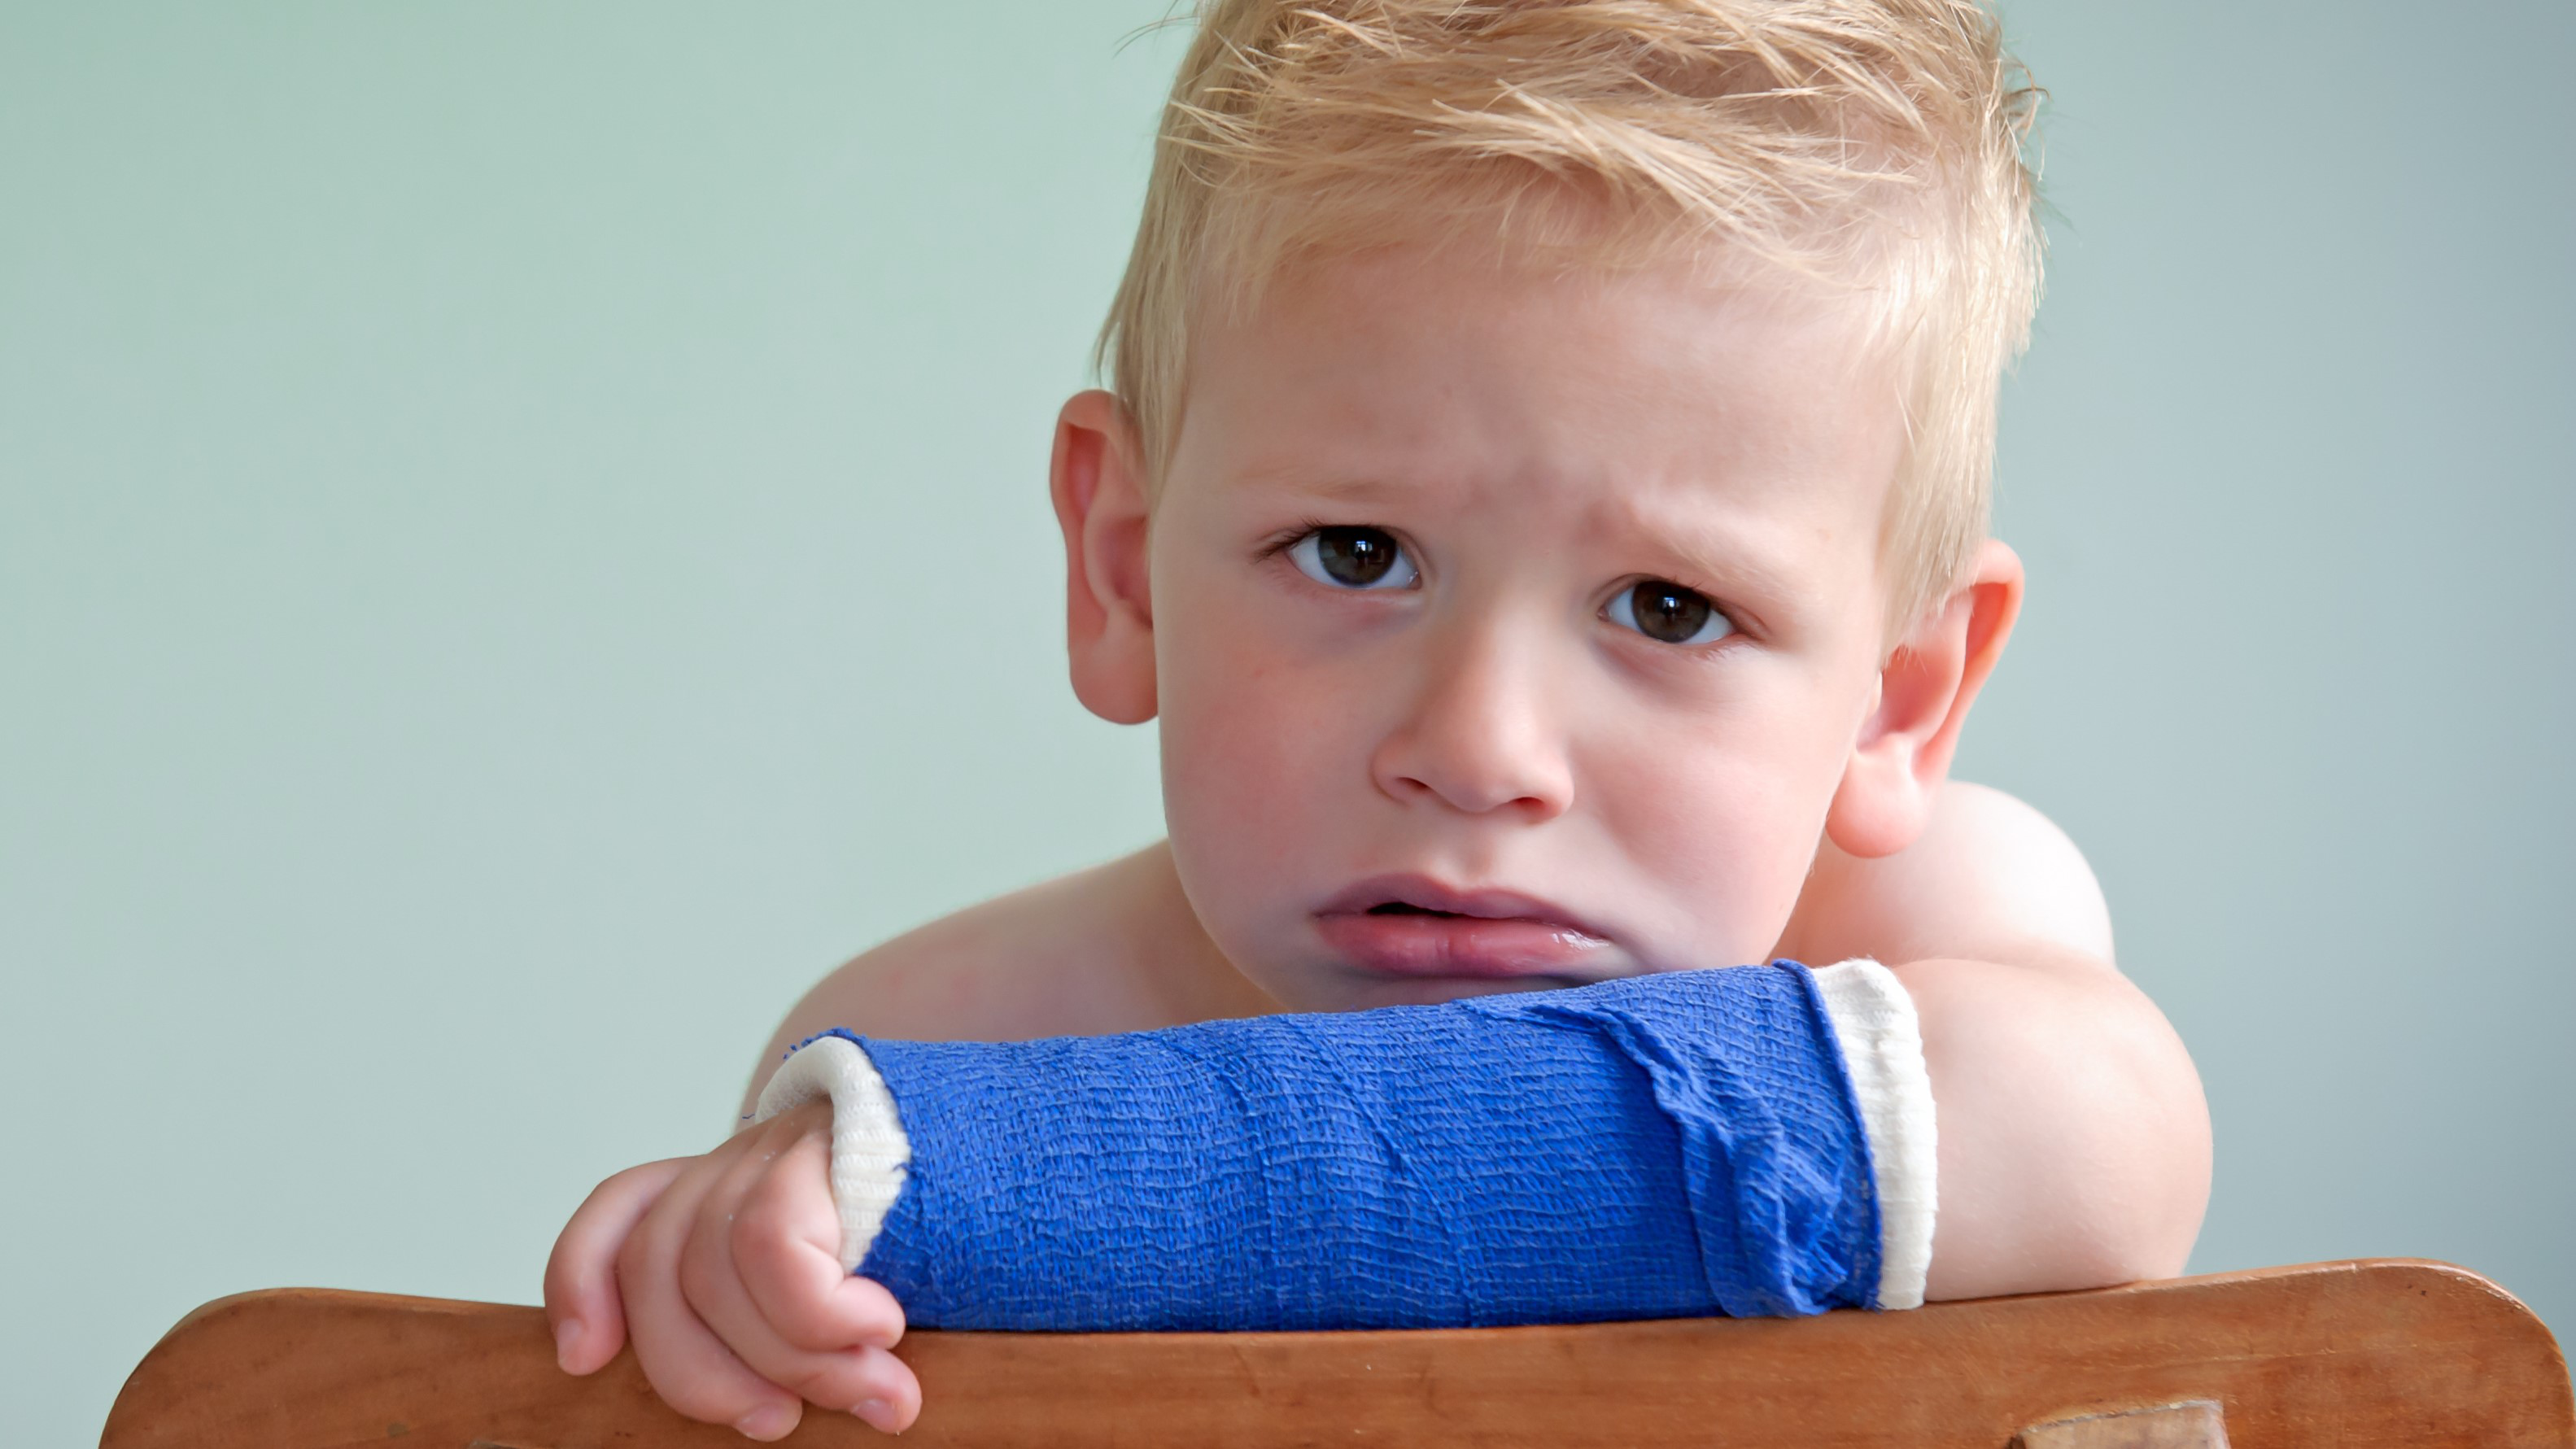 Gãy xương cẳng tay ở trẻ em: Những điều ba mẹ cần biết